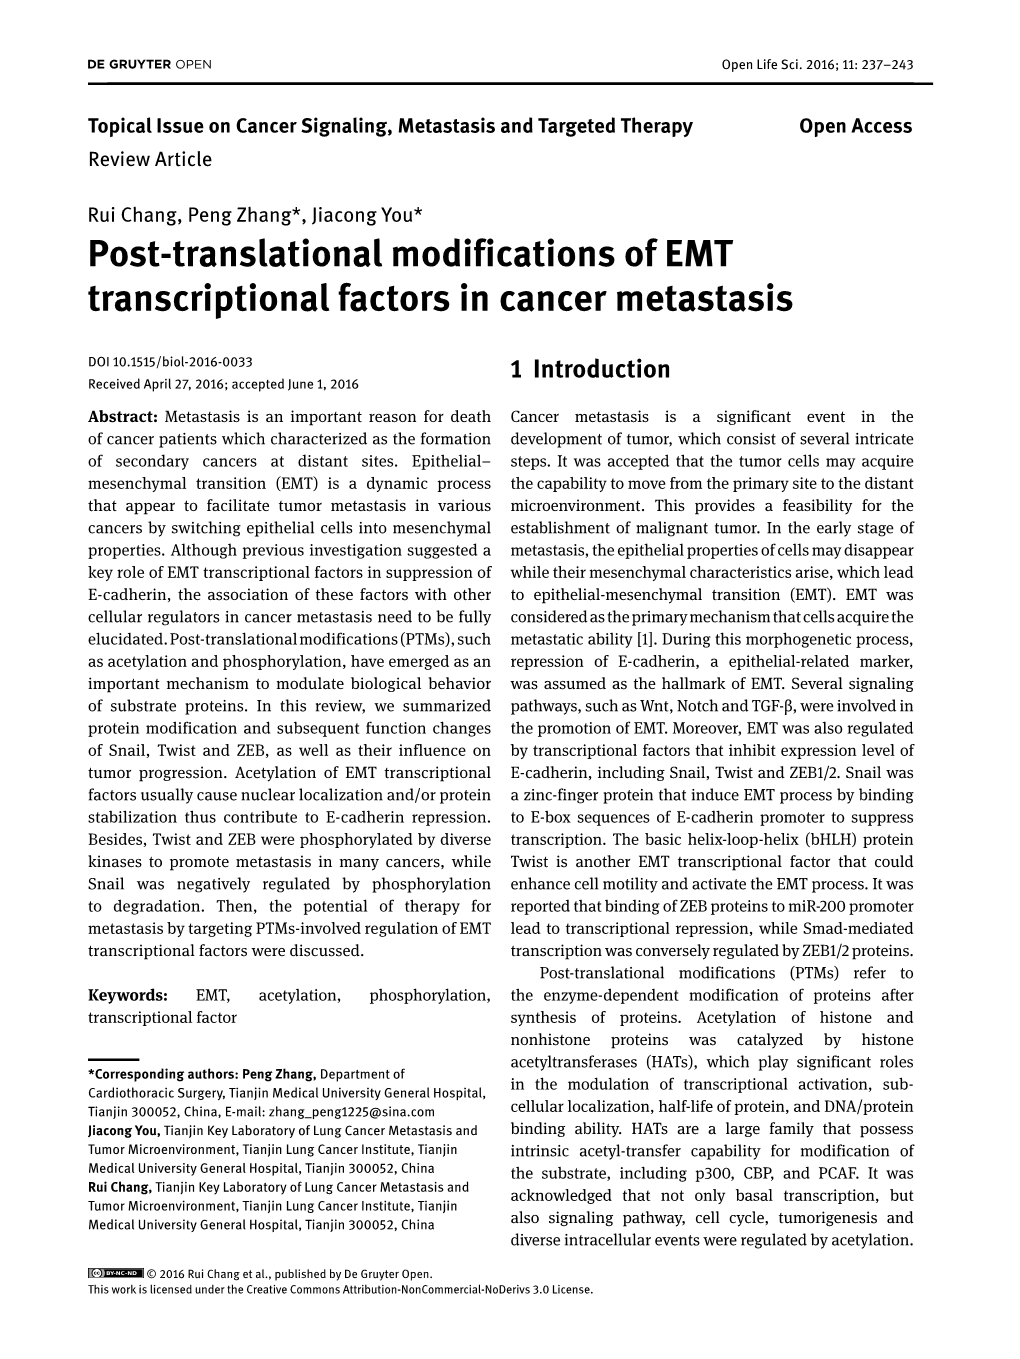 Post-Translational Modifications of EMT Transcriptional Factors in Cancer Metastasis